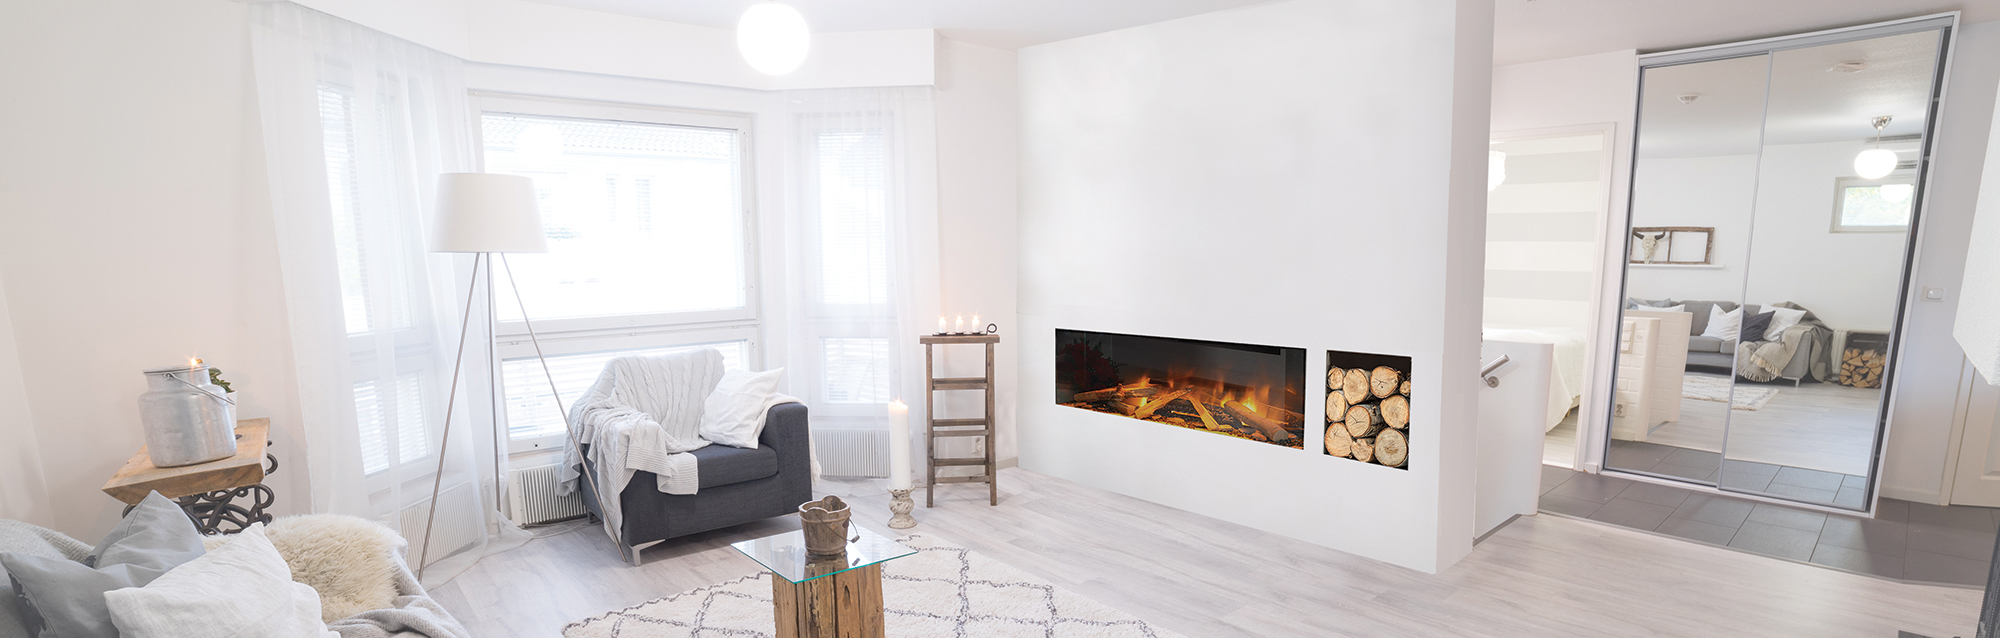 Scandinavian design and a modern electric fireplace.